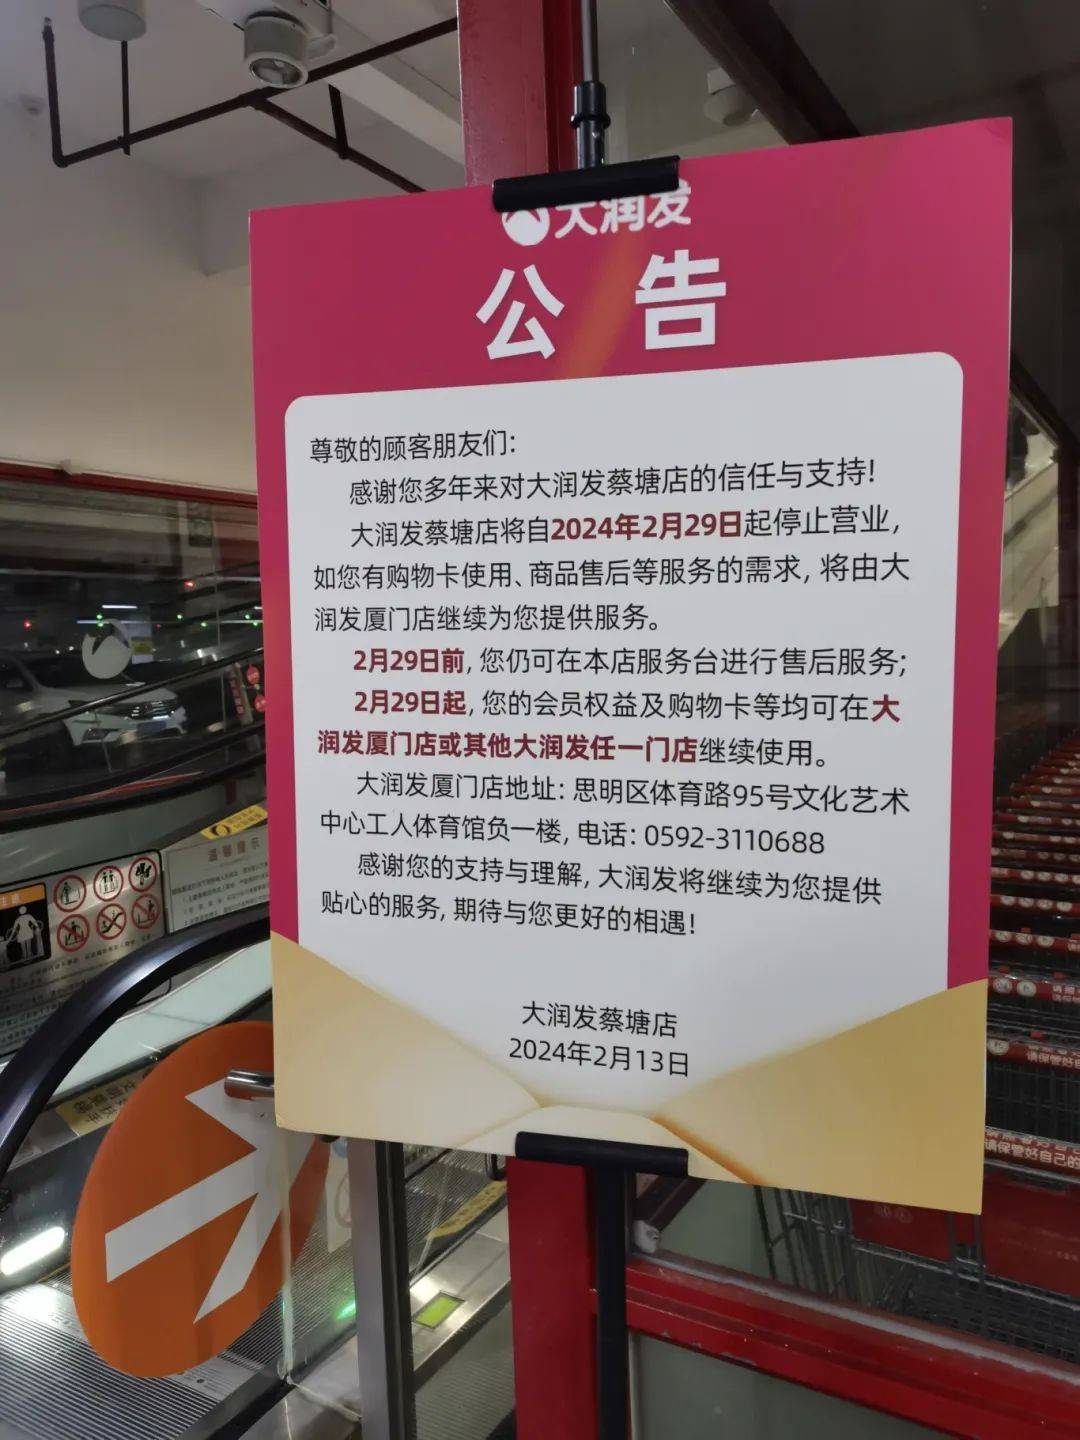 大润发蔡塘店将自2024年2月29日起停止营业,如您有购物卡使用,商品